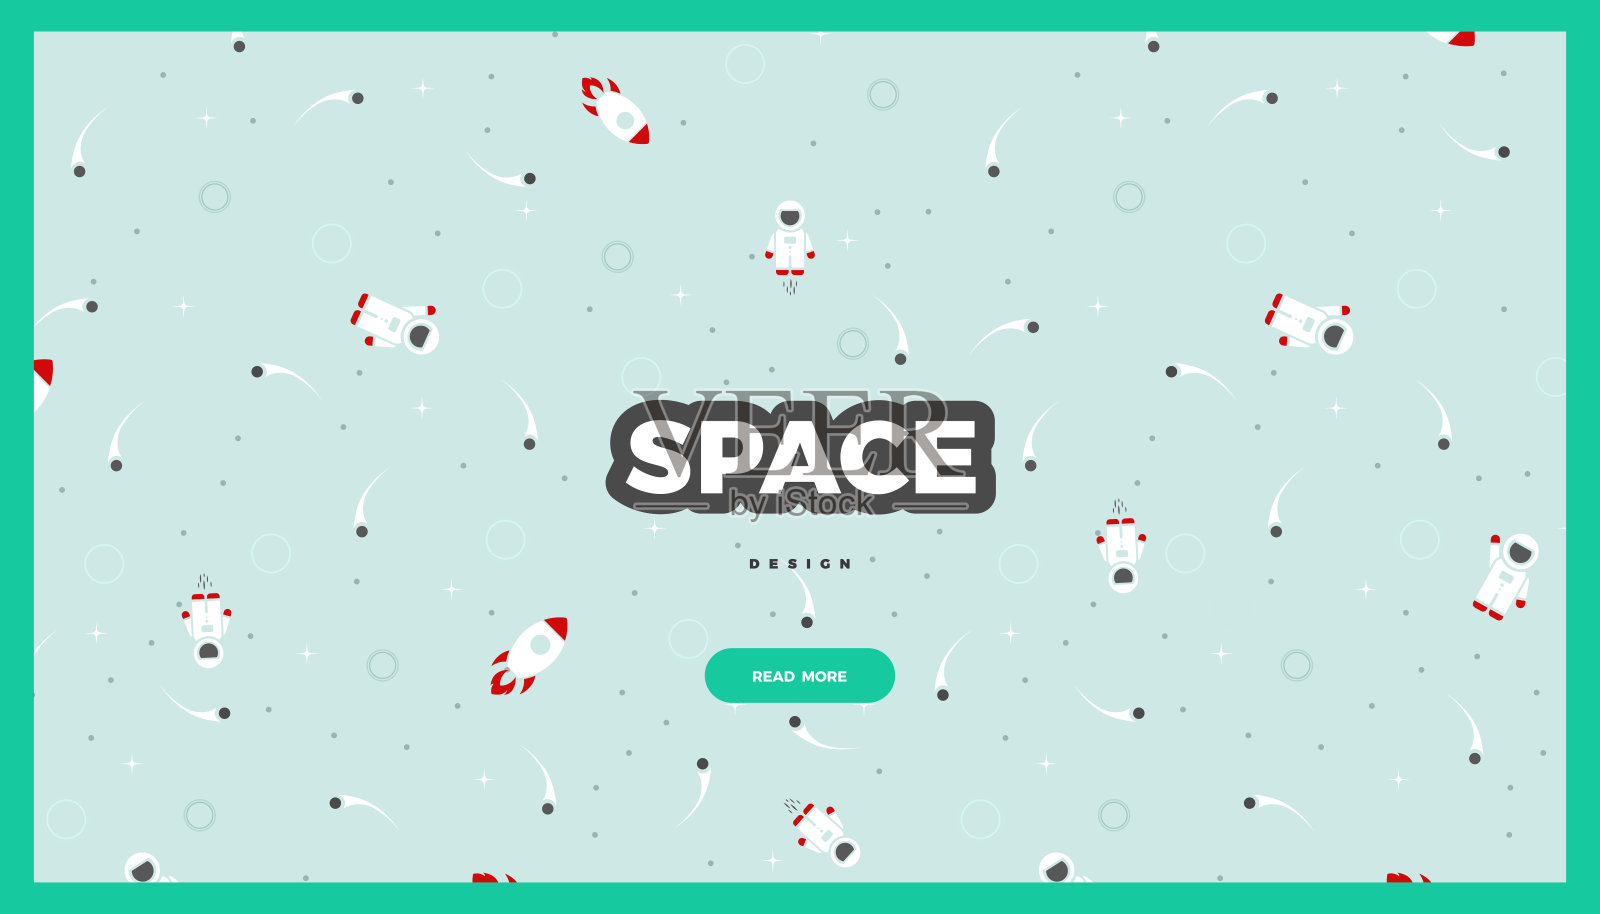 空间探索软蓝色网站模板，创意矢量设计设计模板素材